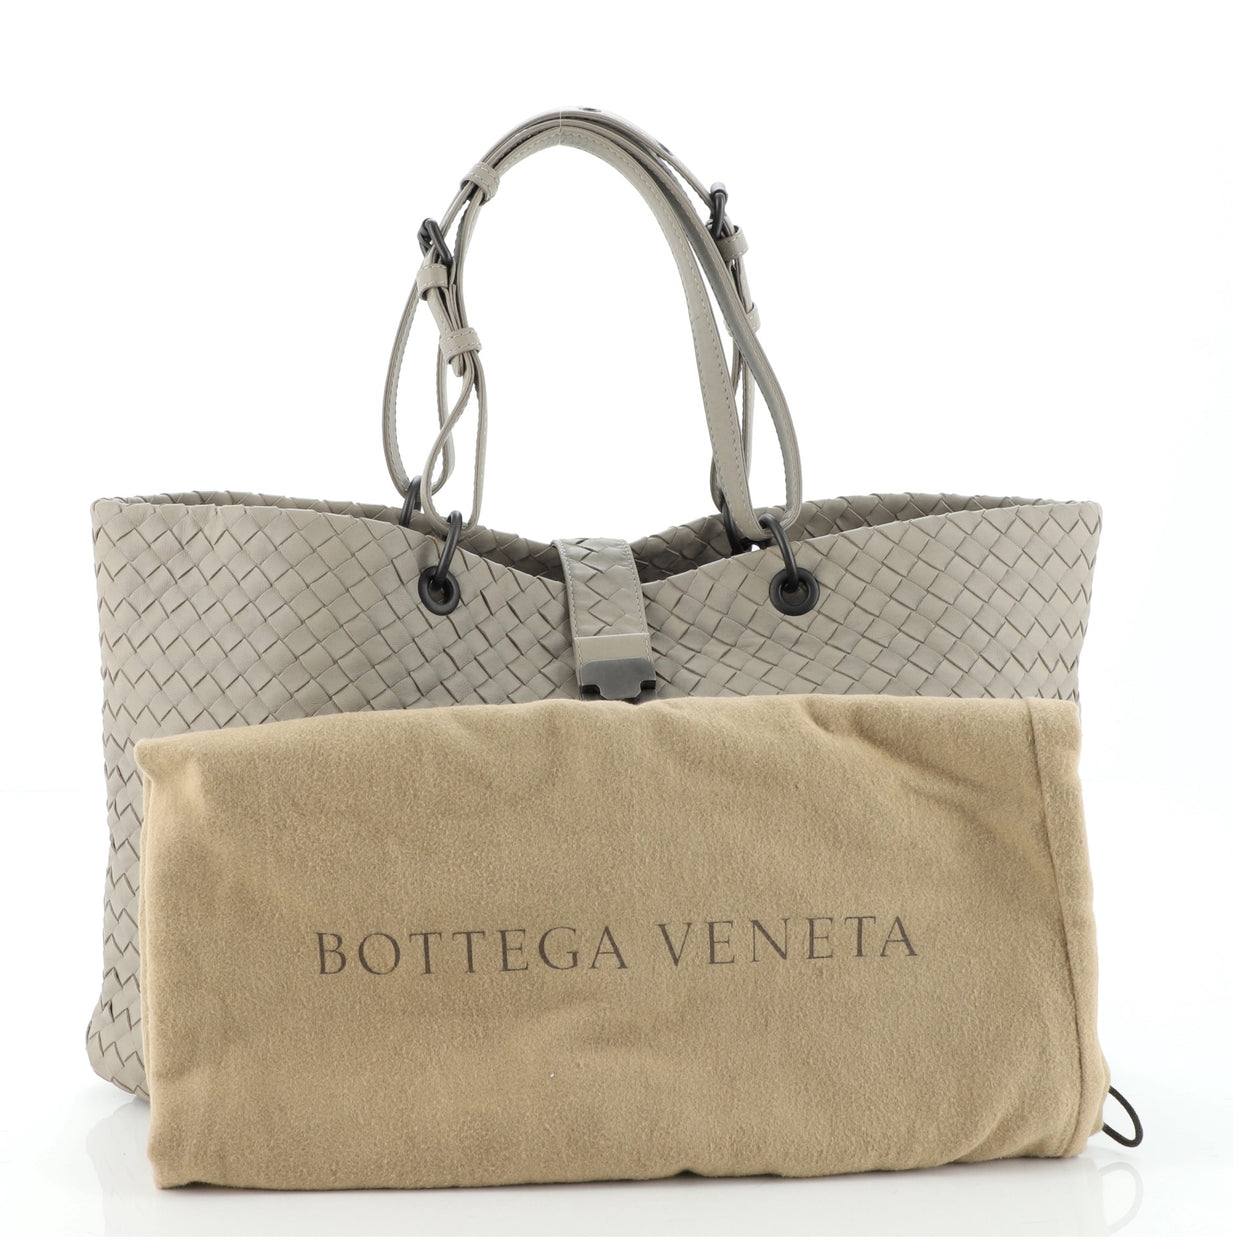 Bottega Veneta Capri Tote Intrecciato Nappa Large 8598295 - Rebag